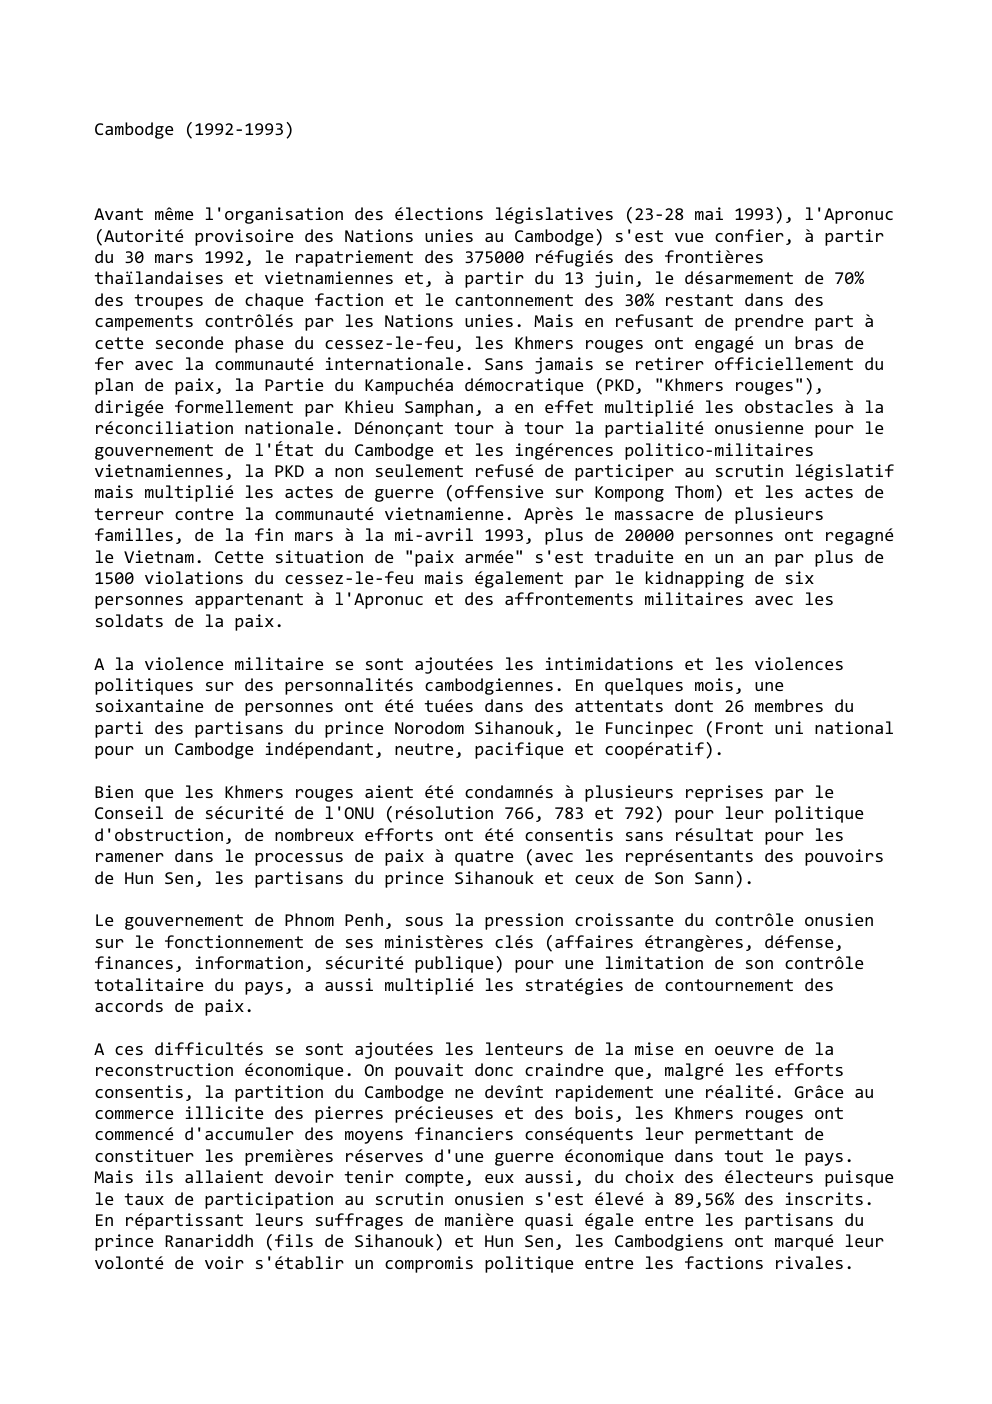 Prévisualisation du document Cambodge (1992-1993)

Avant même l'organisation des élections législatives (23-28 mai 1993), l'Apronuc
(Autorité provisoire des Nations unies au Cambodge) s'est...